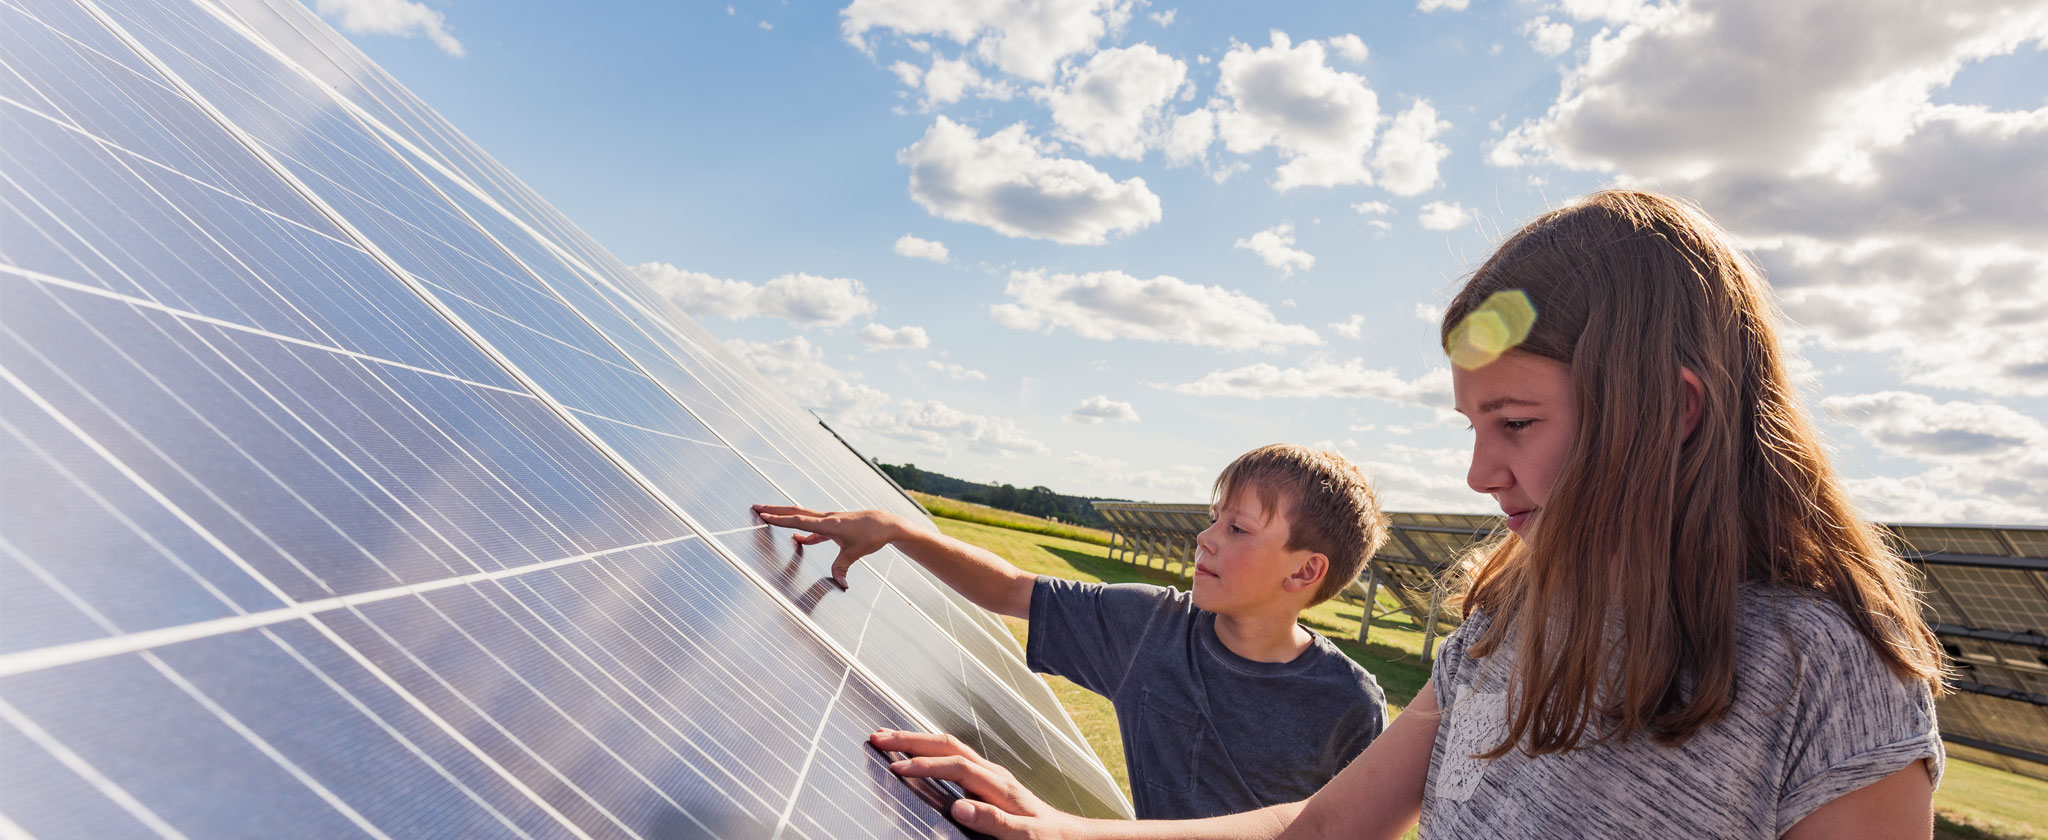 Kids touching solar panel